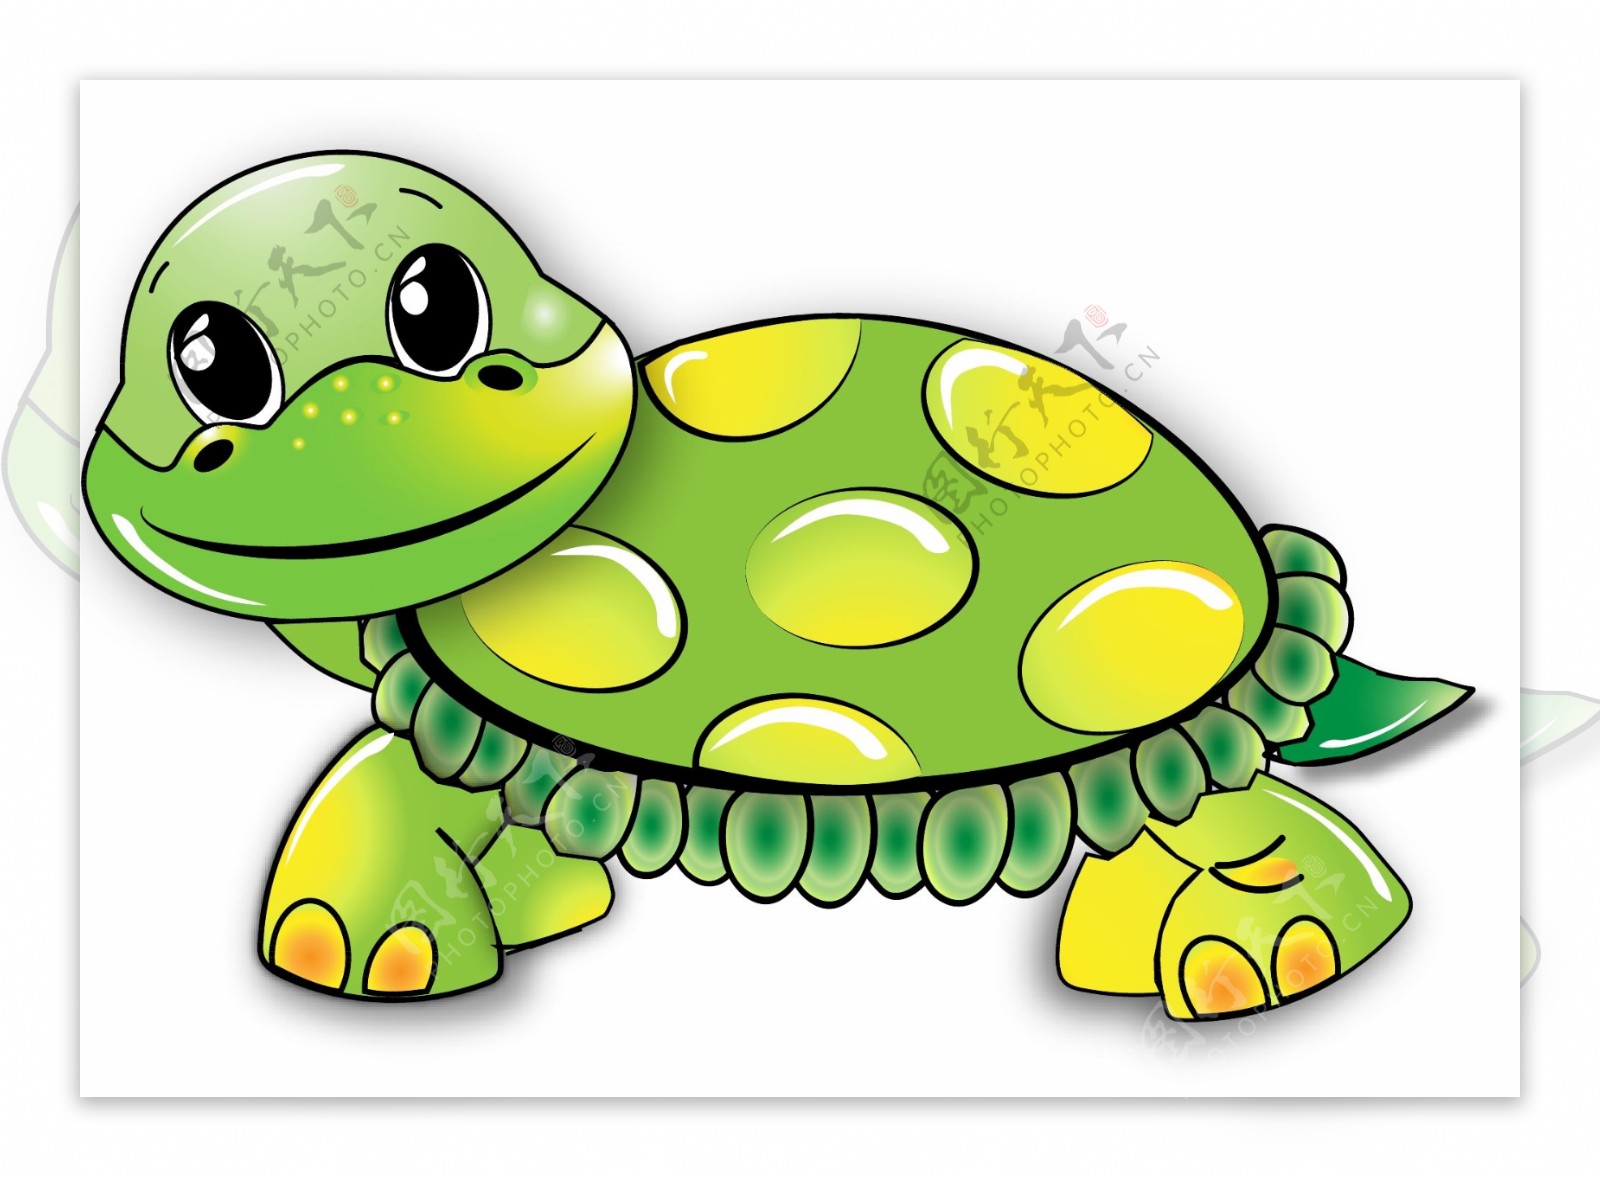 彩色卡通手绘乌龟插图背景图片免费下载 - 觅知网